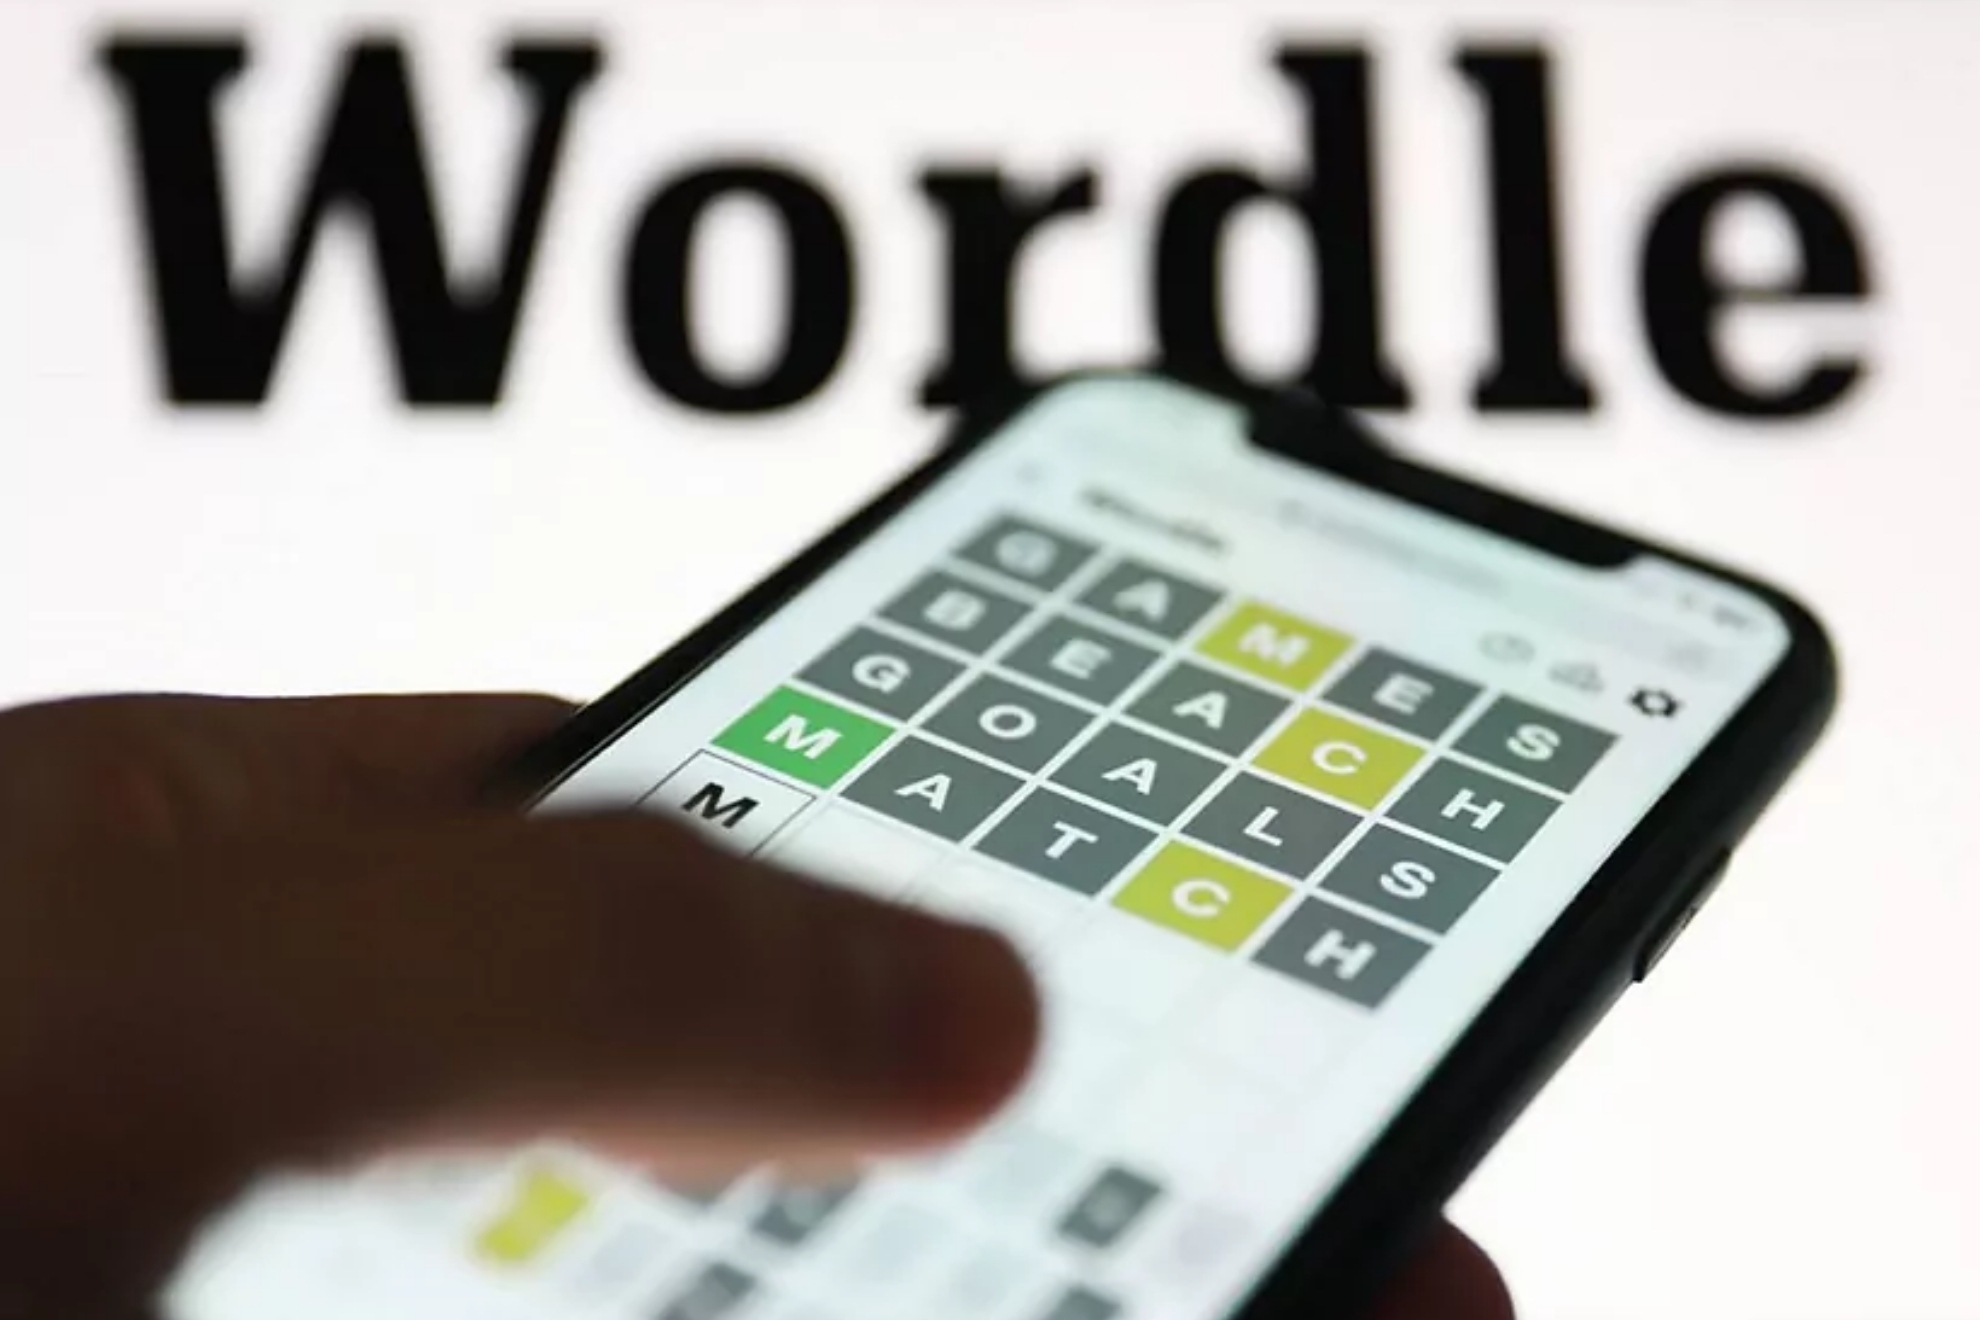 Wordle espaol hoy, 25 de marzo: normal, tildes y cientfico | Soluciones y pistas para adivinar la palabra